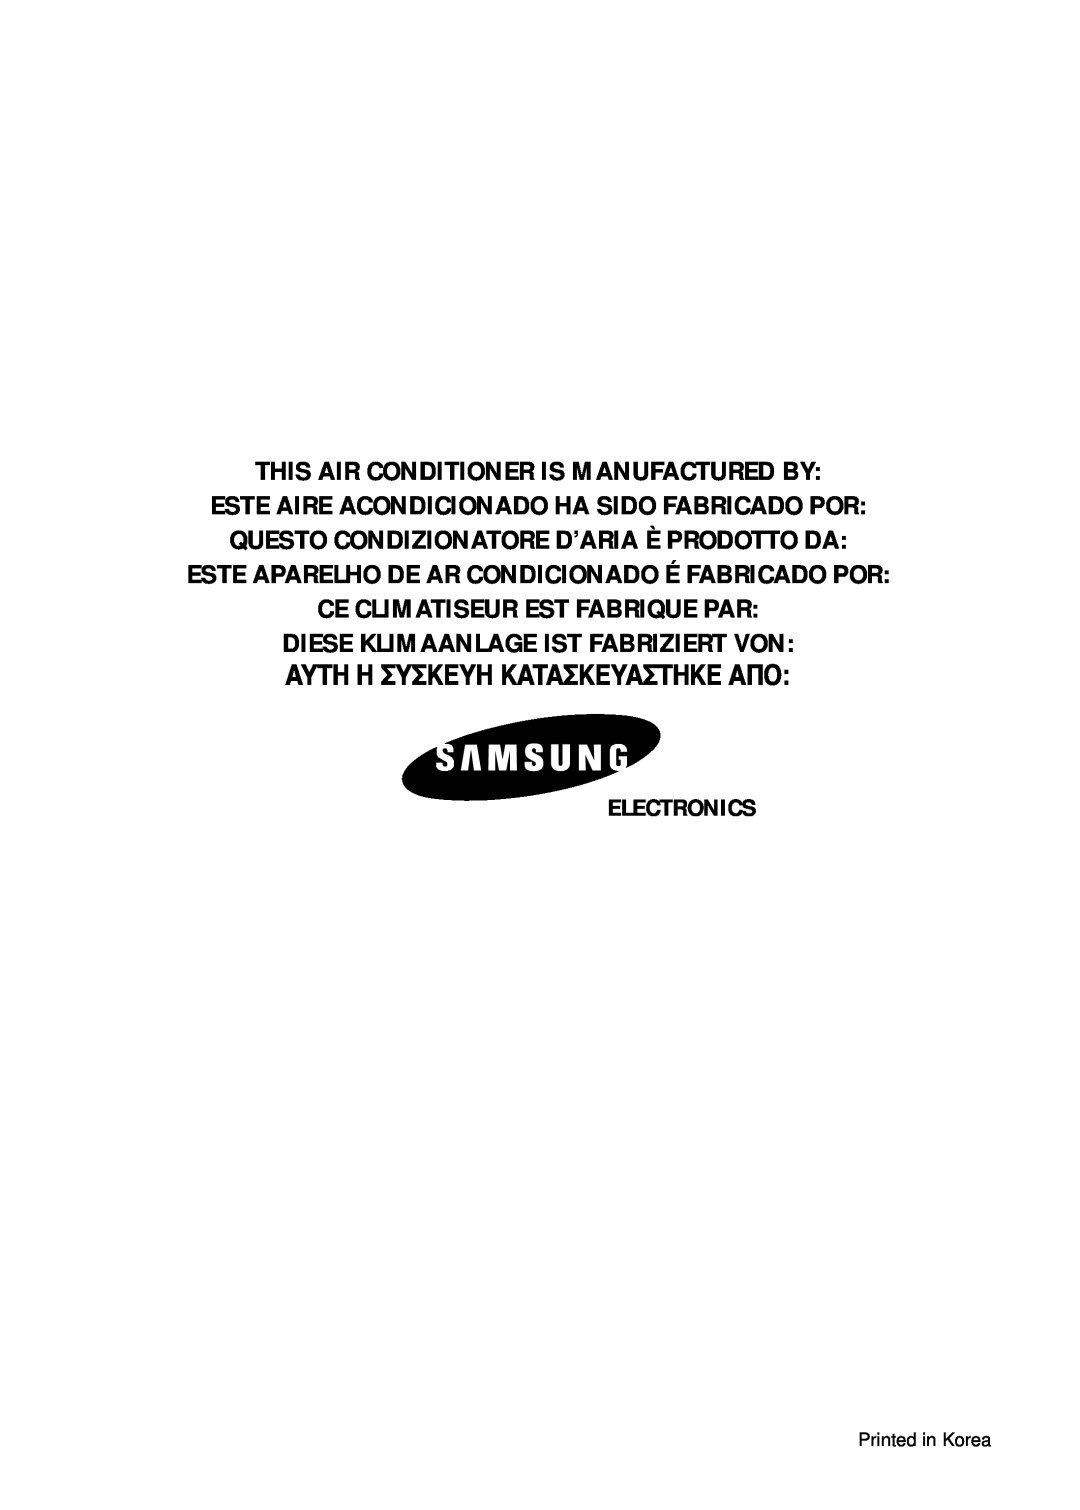 Samsung AS12B1 This Air Conditioner Is Manufactured By, Este Aparelho De Ar Condicionado É Fabricado Por, Electronics 